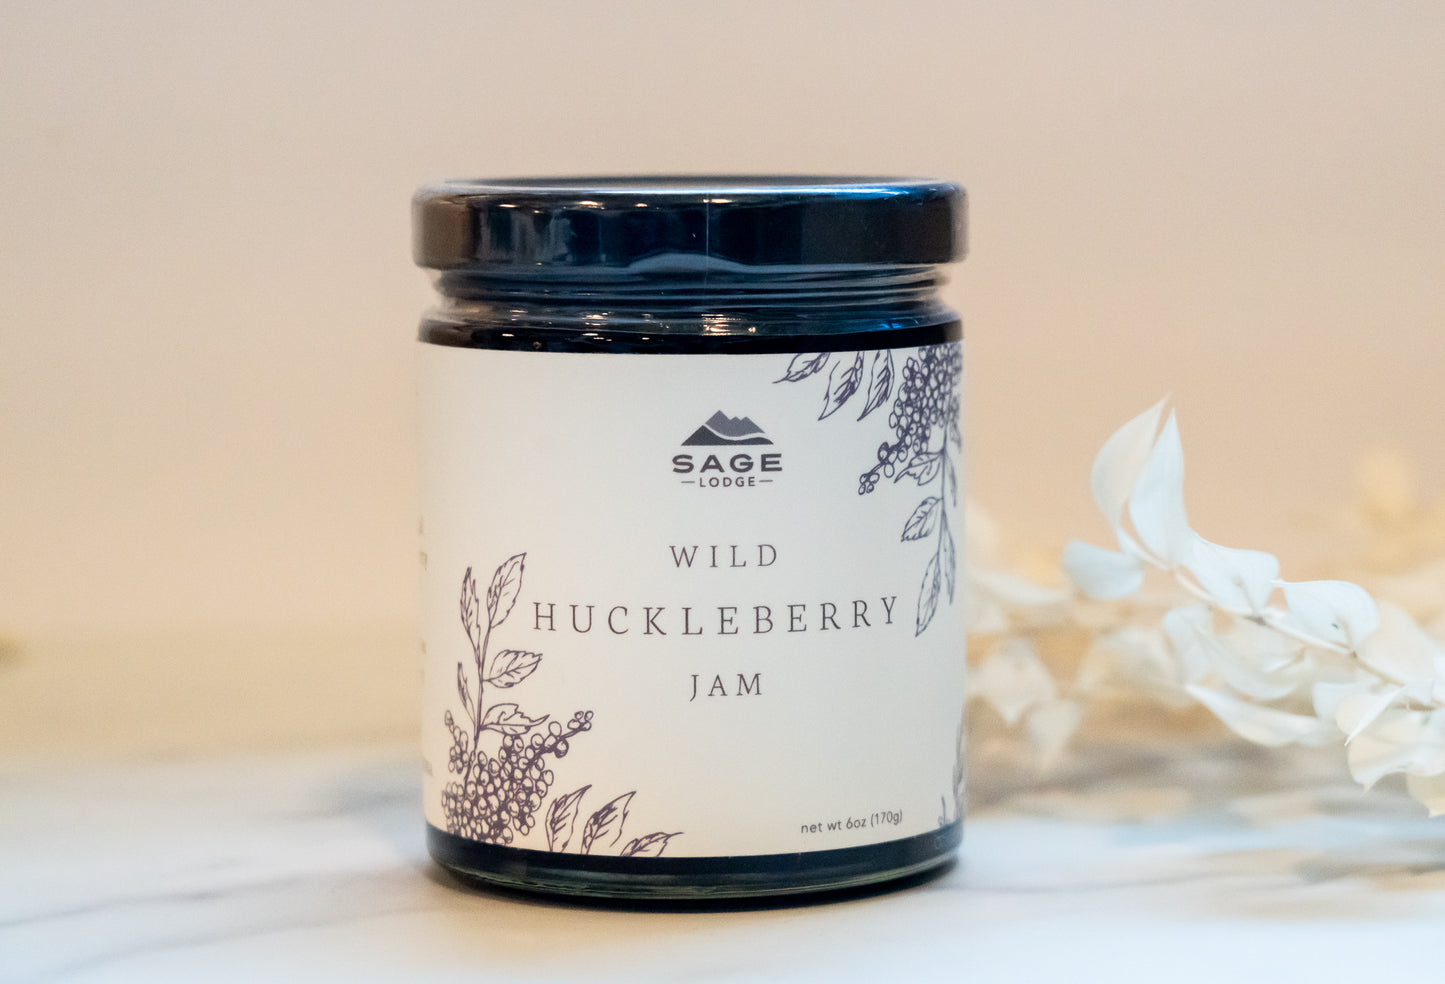 Sage Lodge Huckleberry Jam